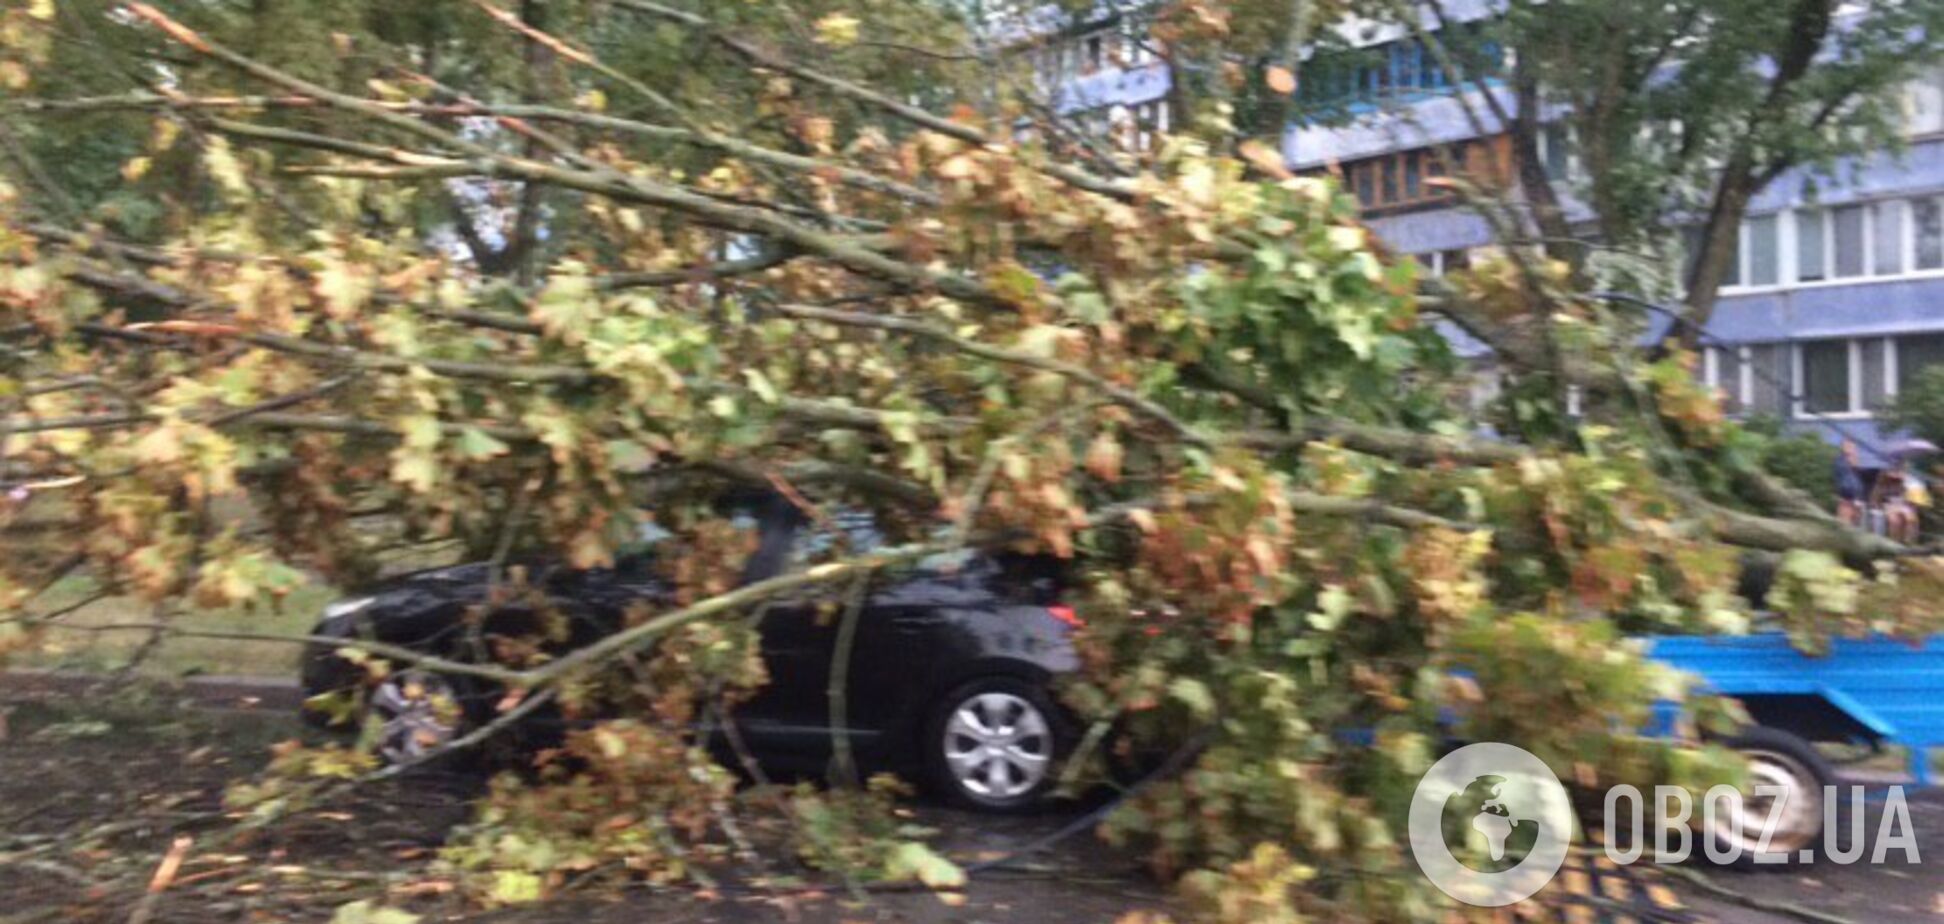 Деревья вырвало с корнем: фото последствий урагана в Киеве